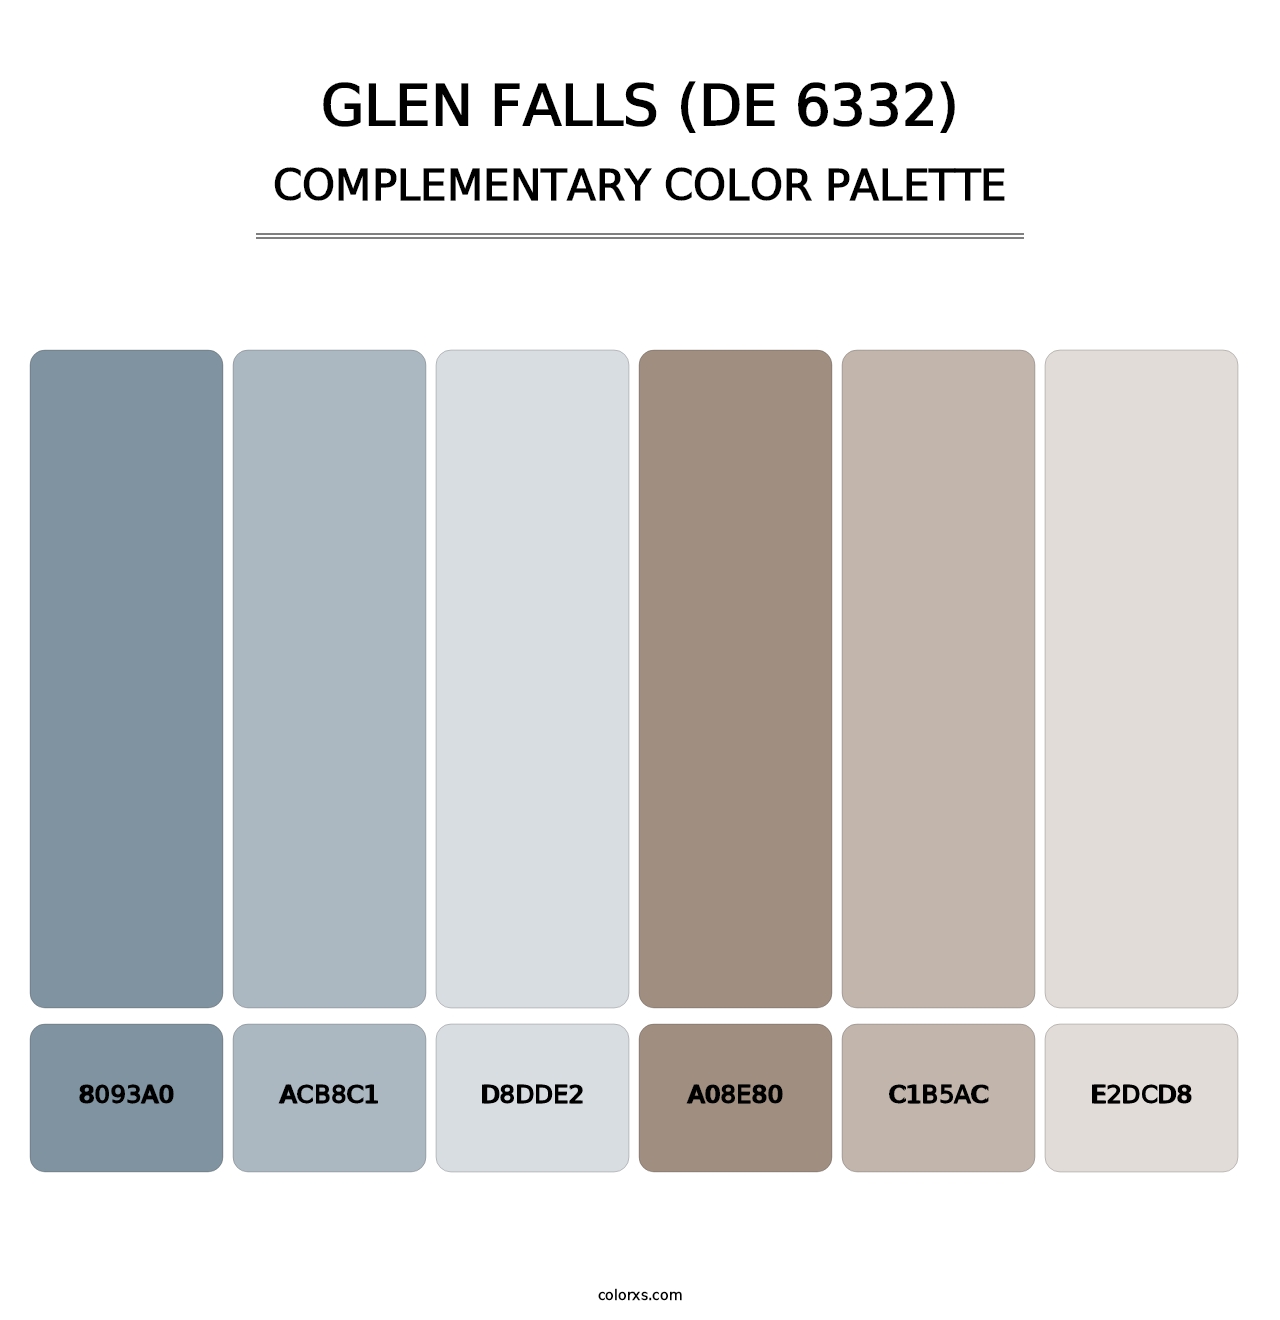 Glen Falls (DE 6332) - Complementary Color Palette